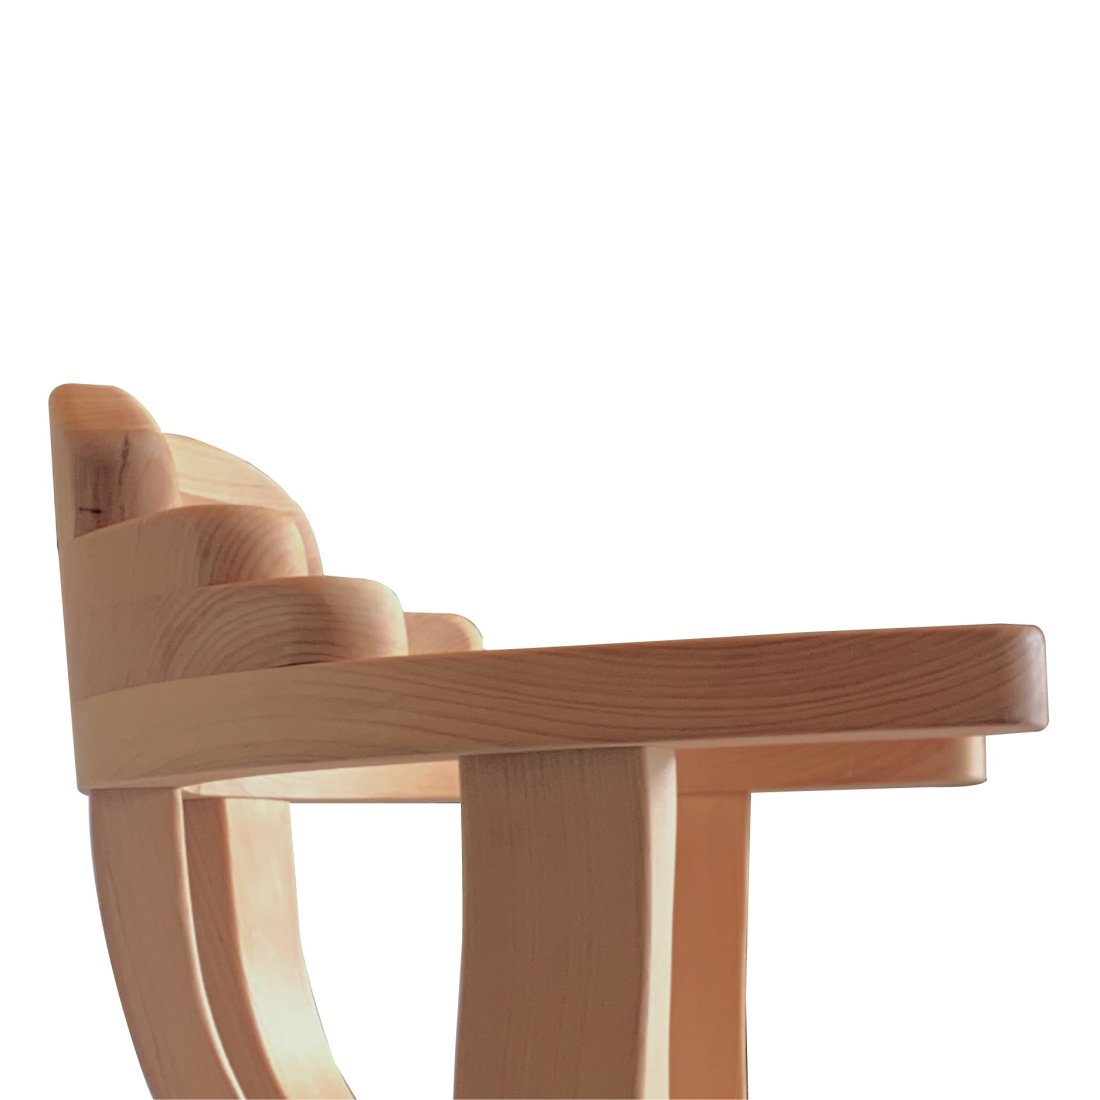 よもぎ蒸し 背もたれ付き オーダーメイドのひのきの椅子 - Salon de clair online サロンドクレール オンライン